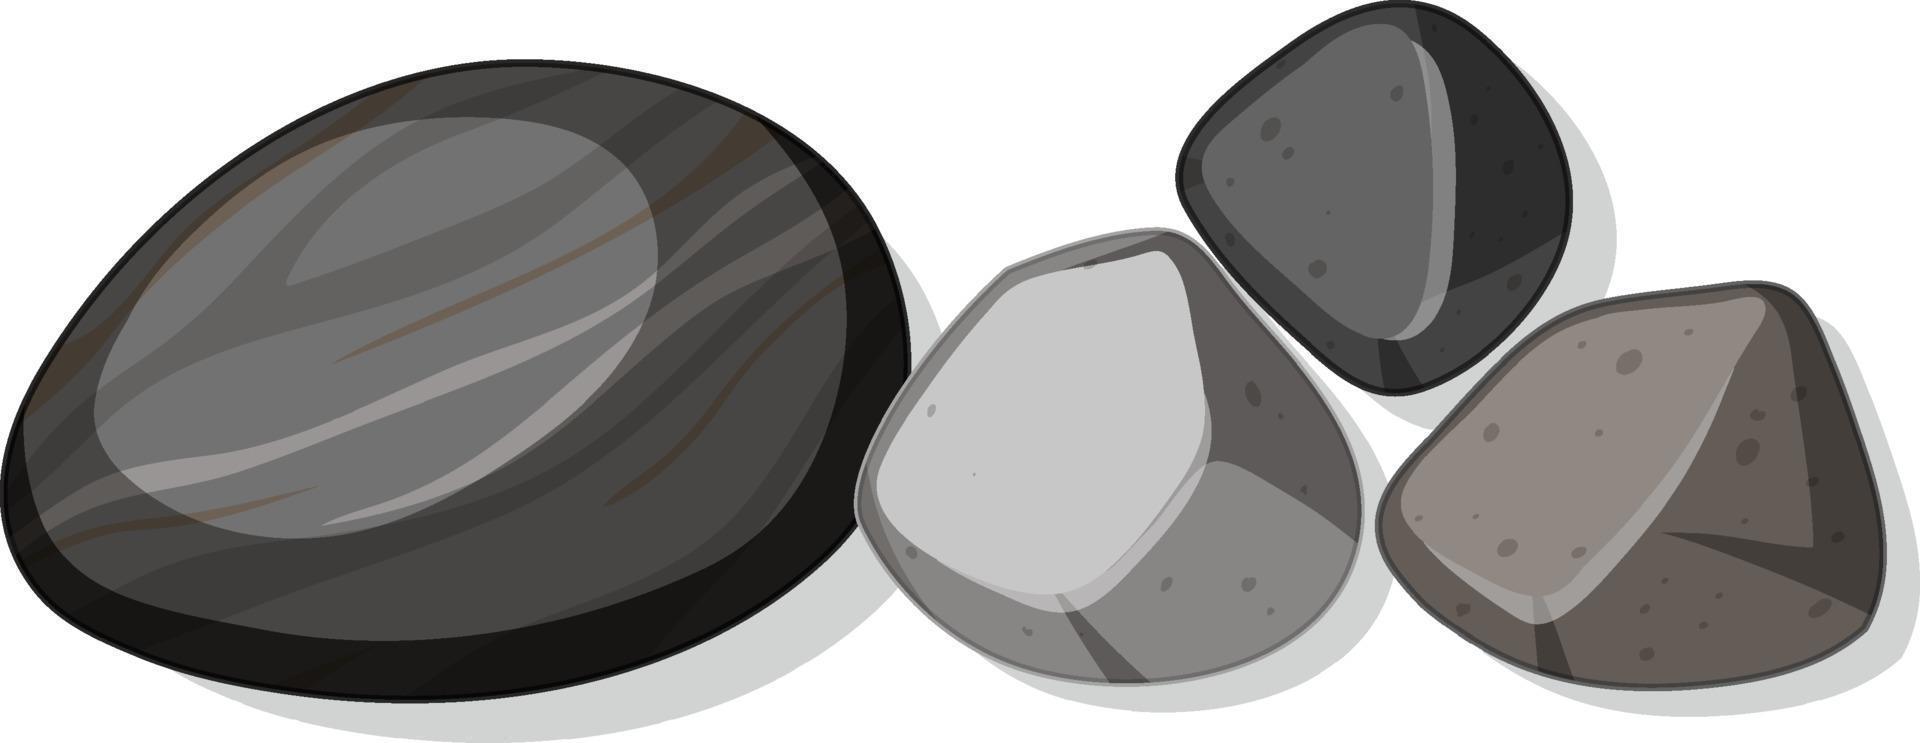 conjunto de diferentes pedras pretas isoladas no fundo branco vetor